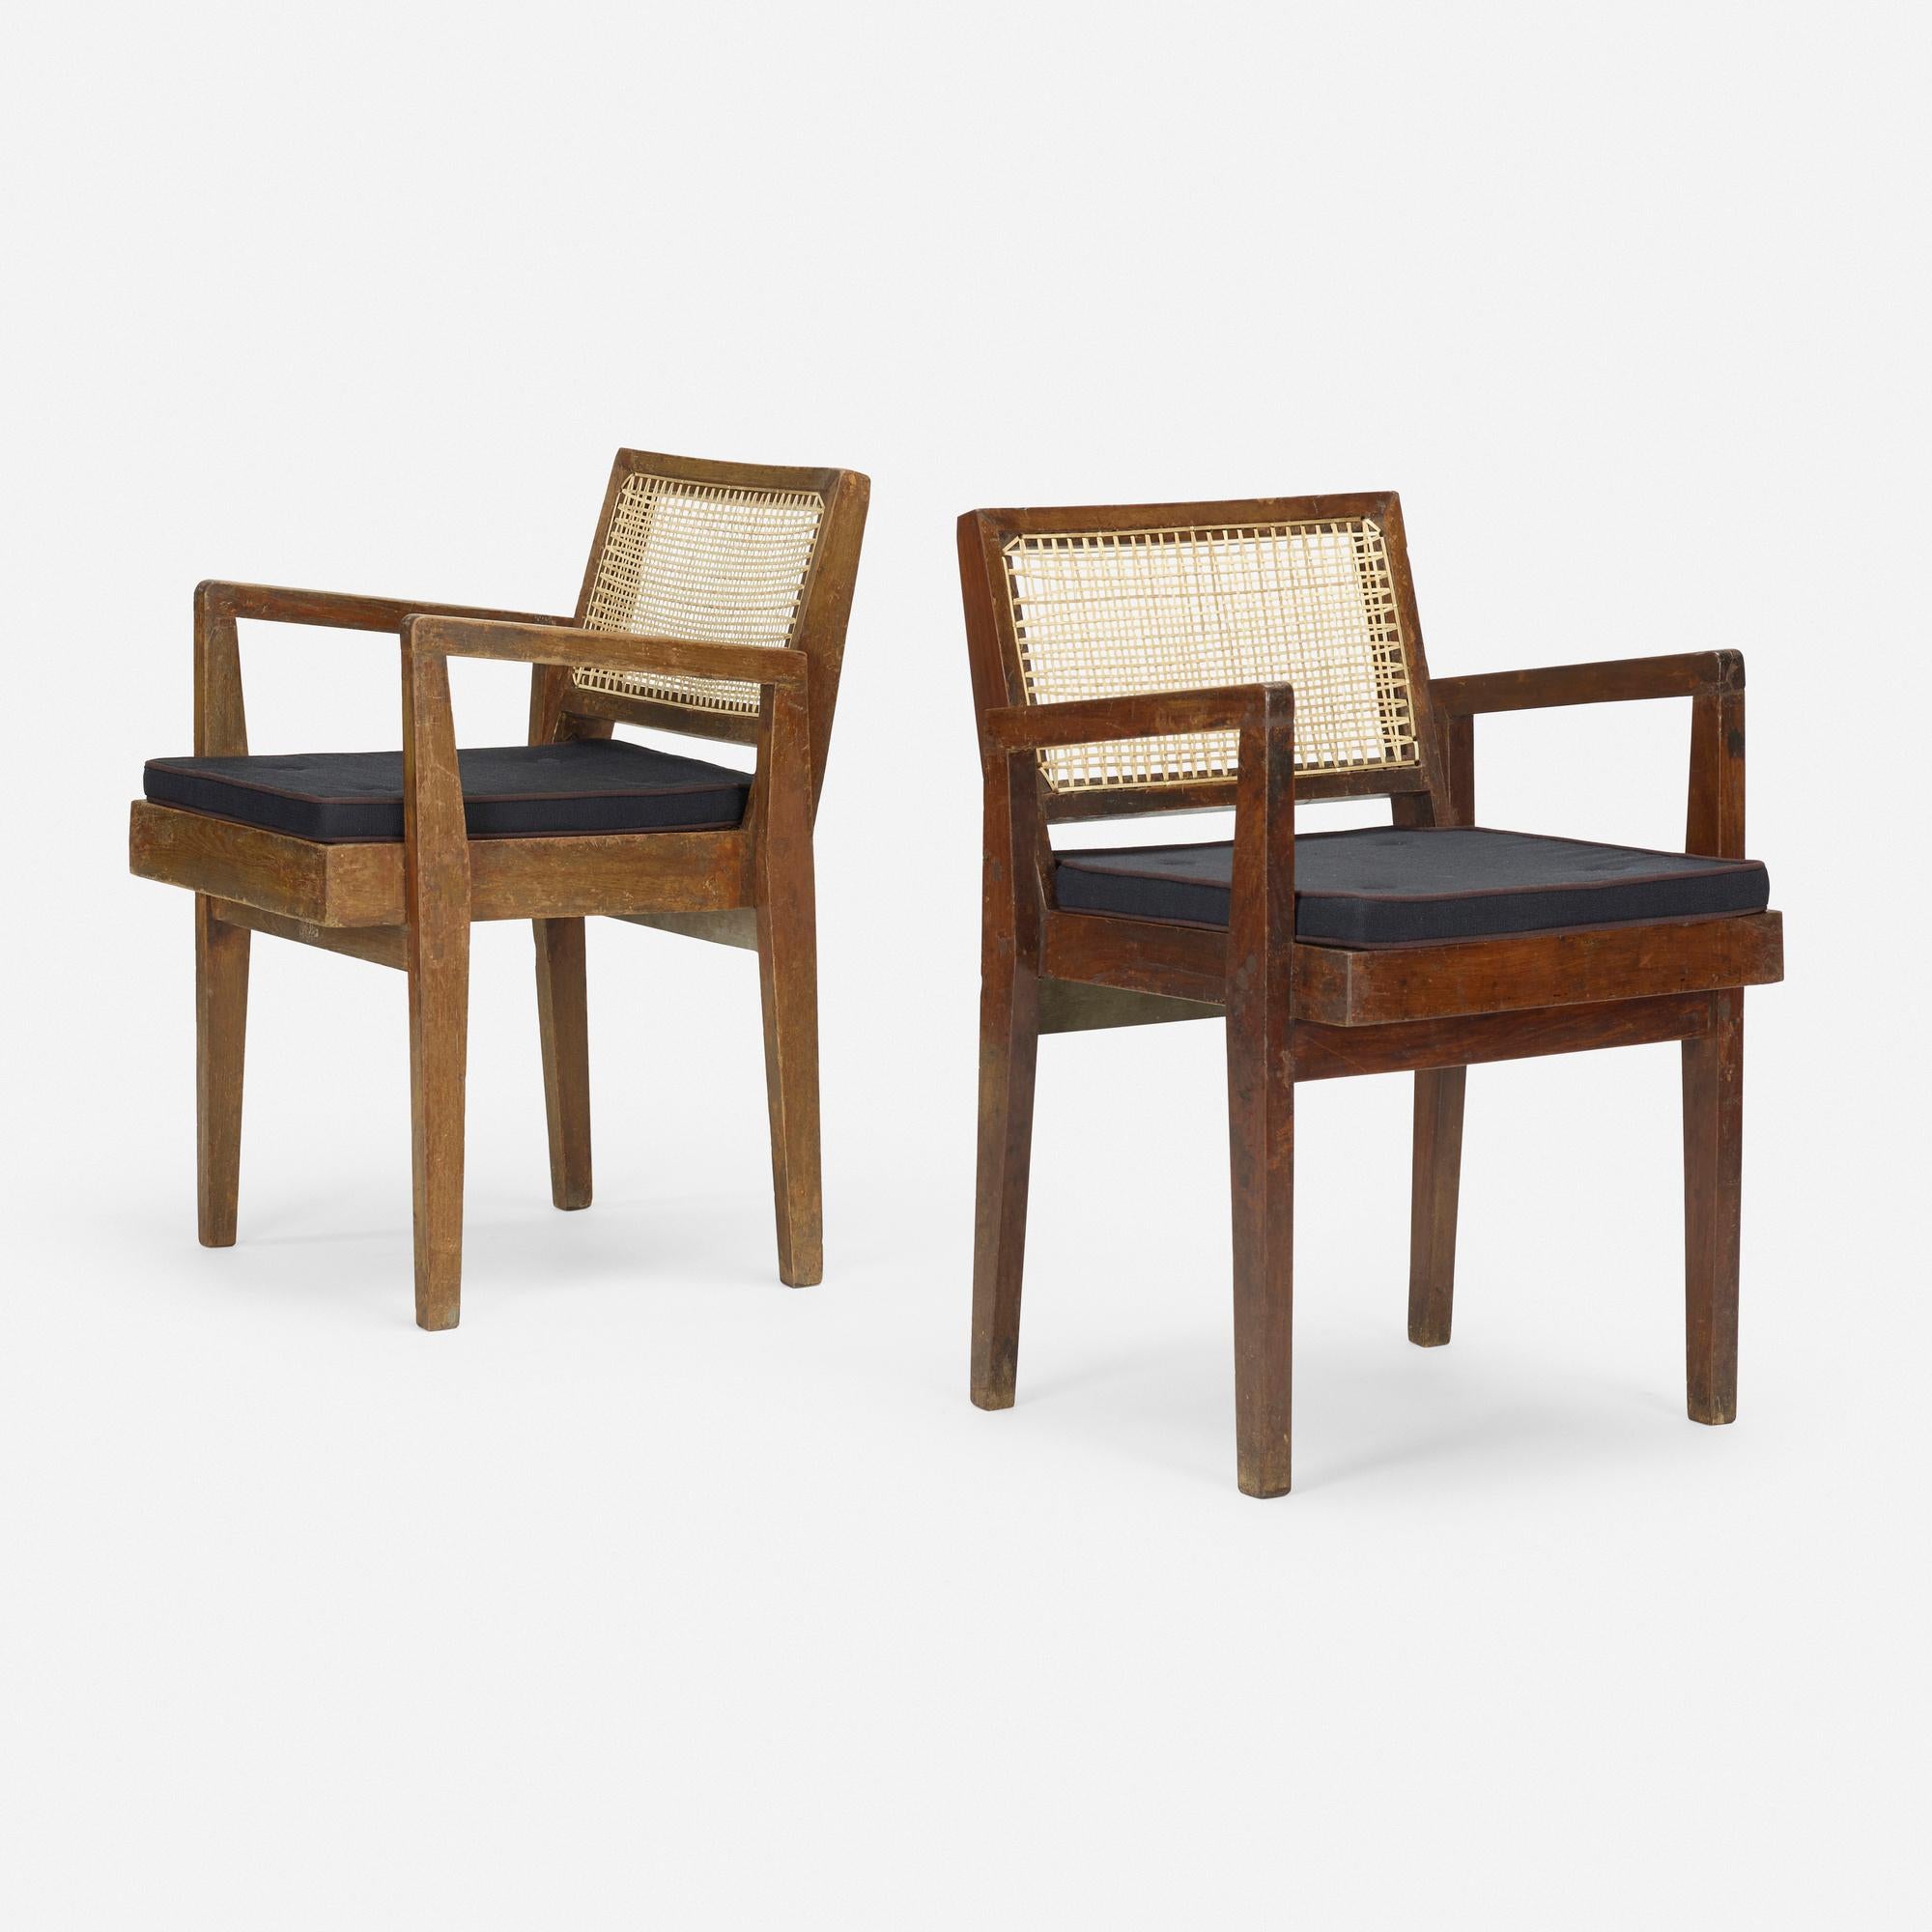 Une paire d'authentiques fauteuils de Chandigarh signés par Pierre Jeanneret. La date de fabrication se situe entre 1955 et 1960. Ces chaises sont fabriquées en teck massif de Birmanie avec une assise et un dossier cannés.  La traverse supérieure